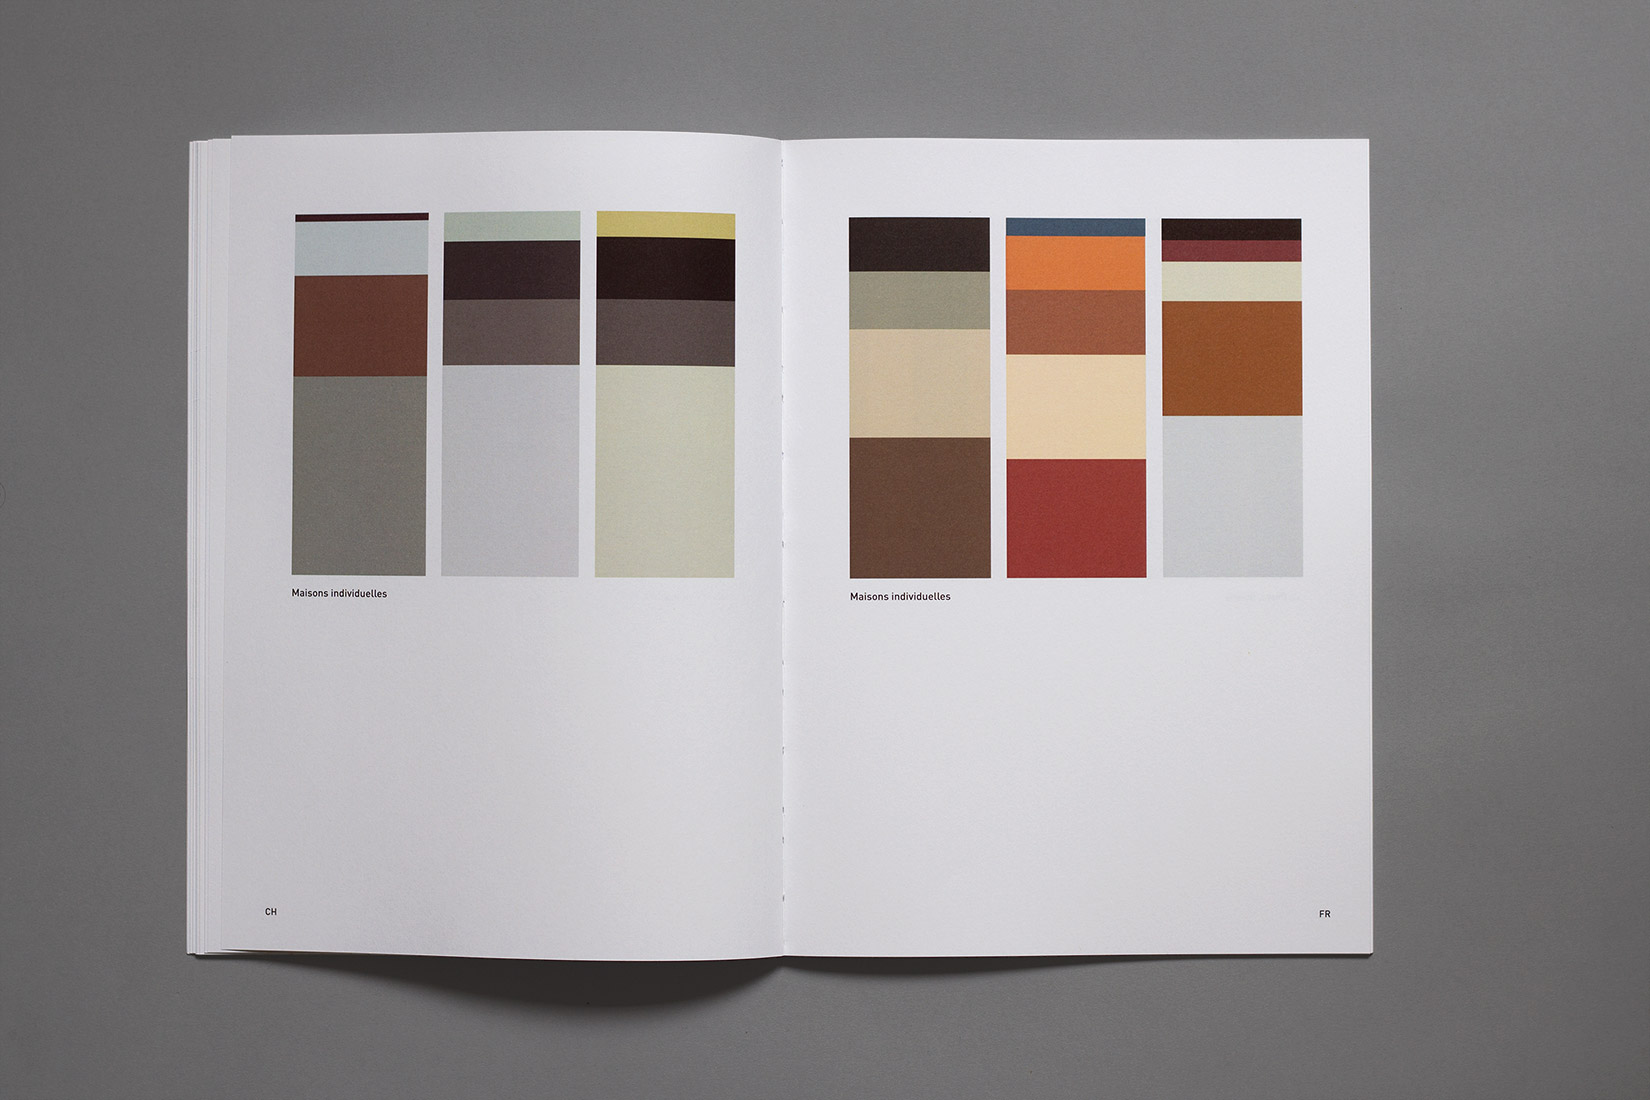 Graphisme, Suisse, France, lignes, surface, proportion de couleurs, maisons individuelles